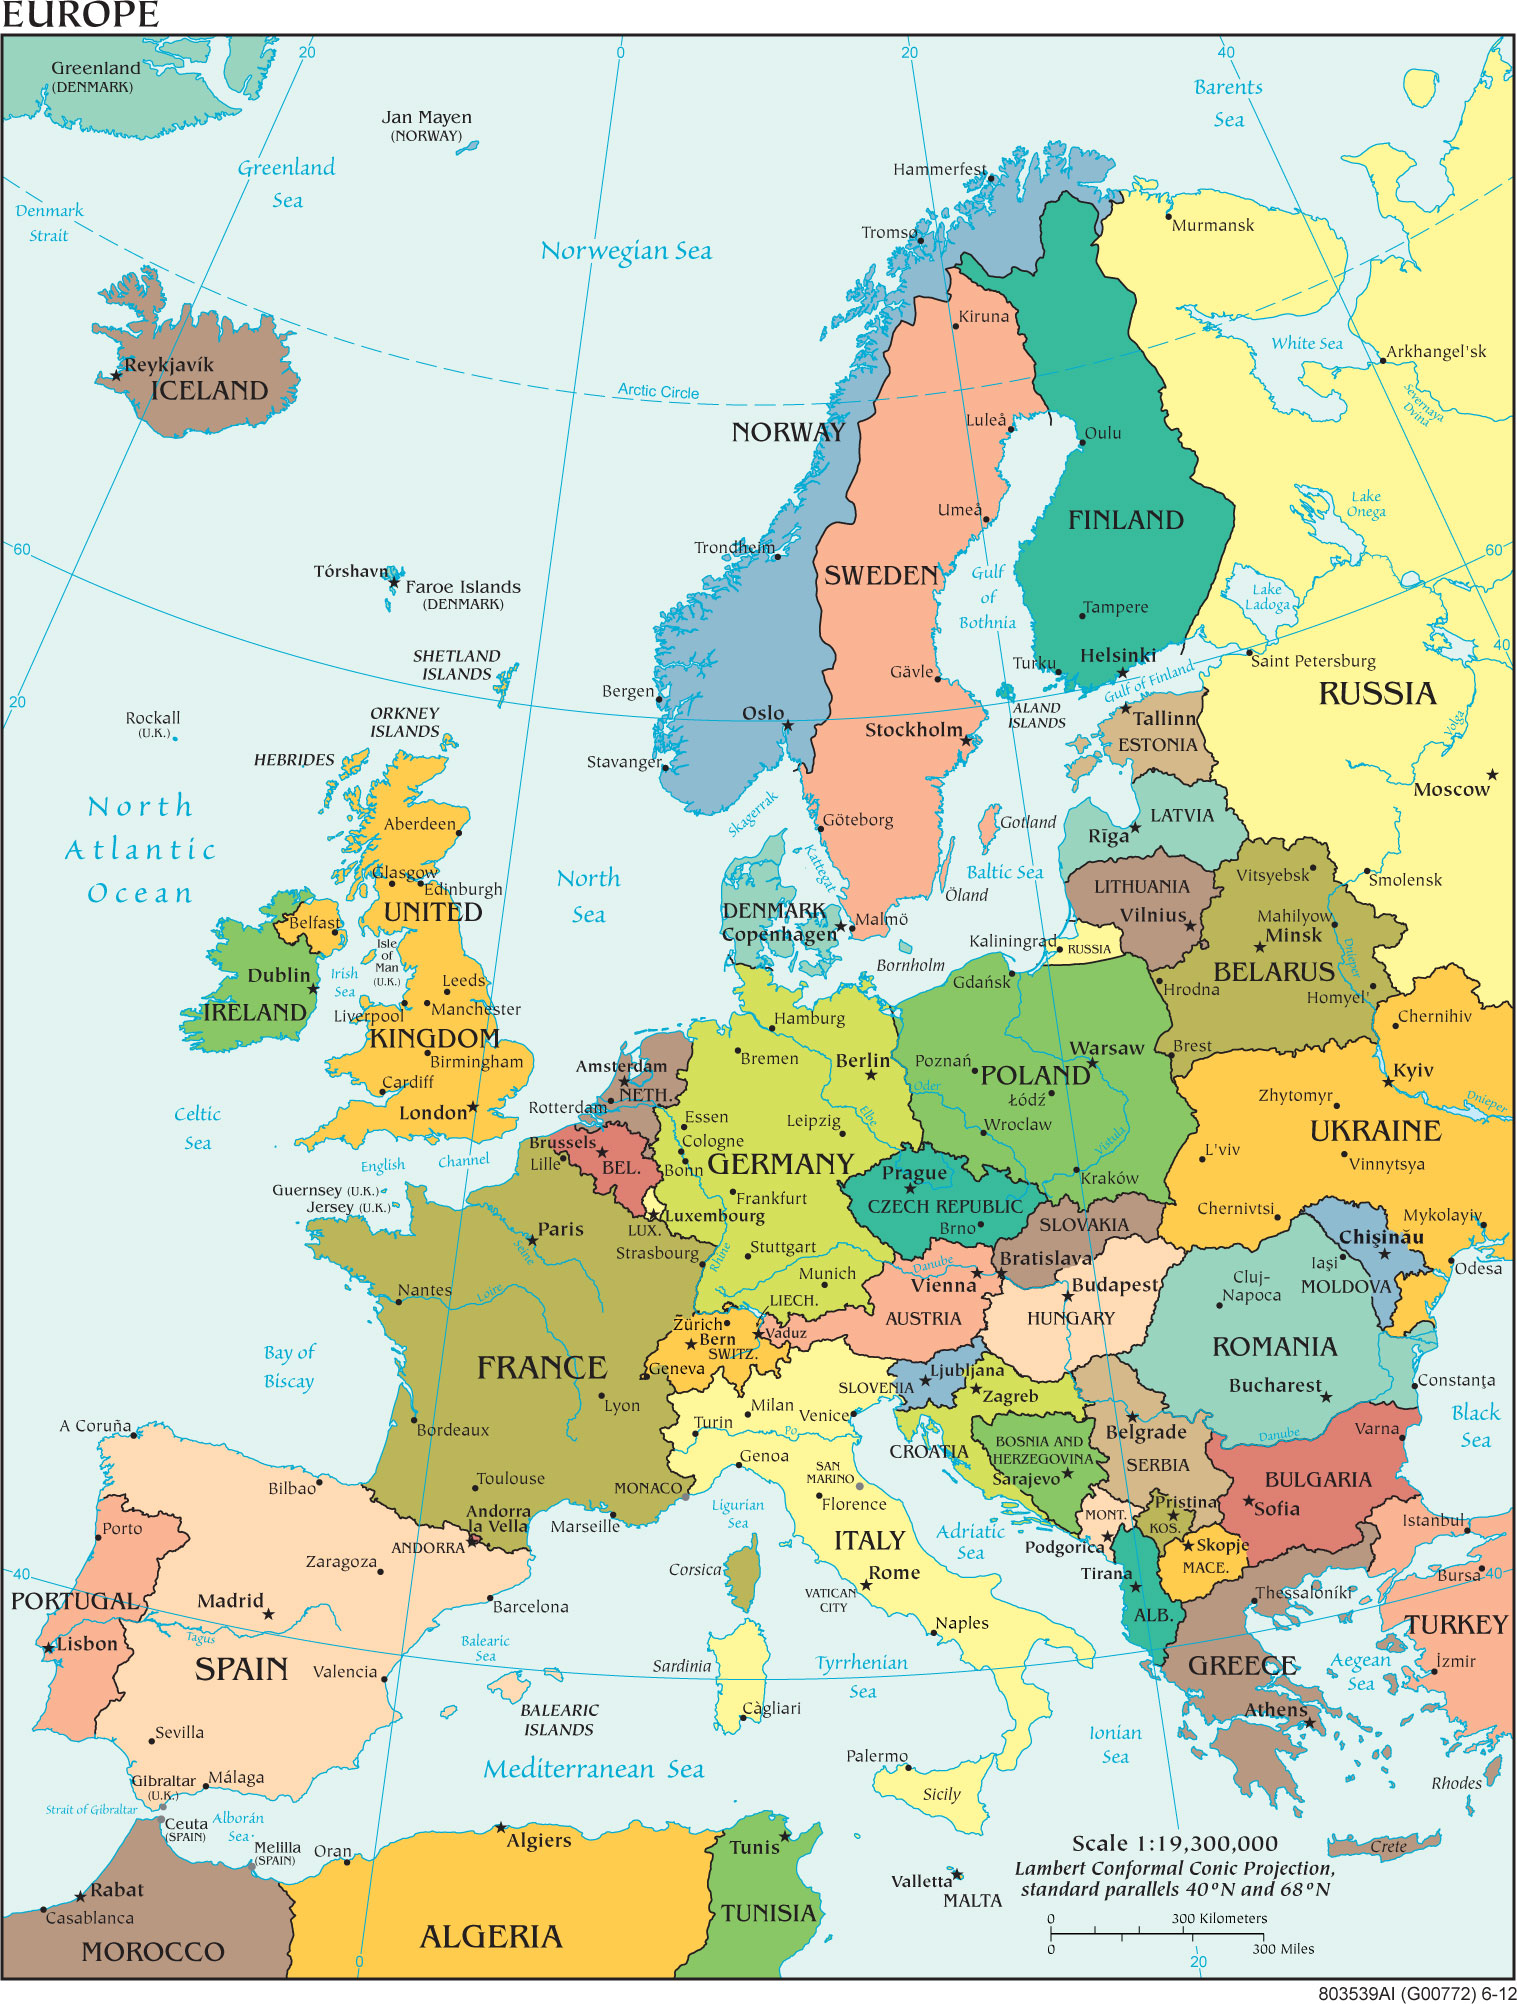 Nhờ vào bản đồ châu Âu phóng to năm 2024, bạn có thể tìm kiếm những điểm đến mới lạ và thú vị, cũng như có cái nhìn tổng quát hơn về nền văn hóa, lịch sử và kiến trúc của Châu Âu. Điều này sẽ giúp bạn lên kế hoạch cho chuyến du lịch của mình một cách chi tiết và rõ ràng hơn. Hãy bắt đầu chuẩn bị cho chuyến đi Châu Âu của mình ngay hôm nay.